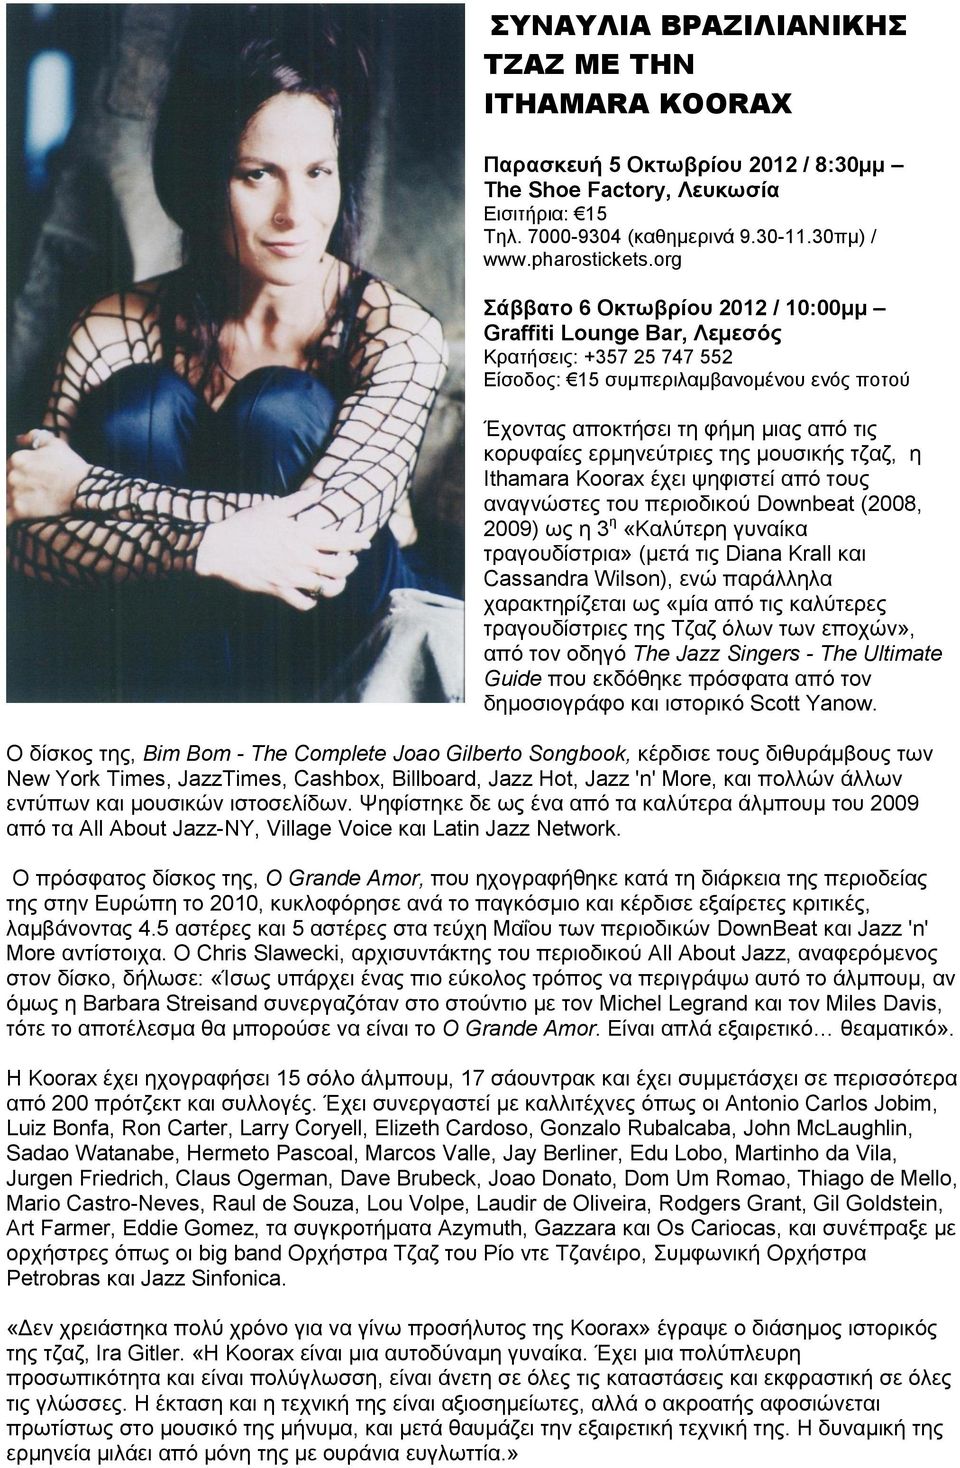 της μουσικής τζαζ, η Ithamara Koorax έχει ψηφιστεί από τους αναγνώστες του περιοδικού Downbeat (2008, 2009) ως η 3 η «Καλύτερη γυναίκα τραγουδίστρια» (μετά τις Diana Krall και Cassandra Wilson), ενώ